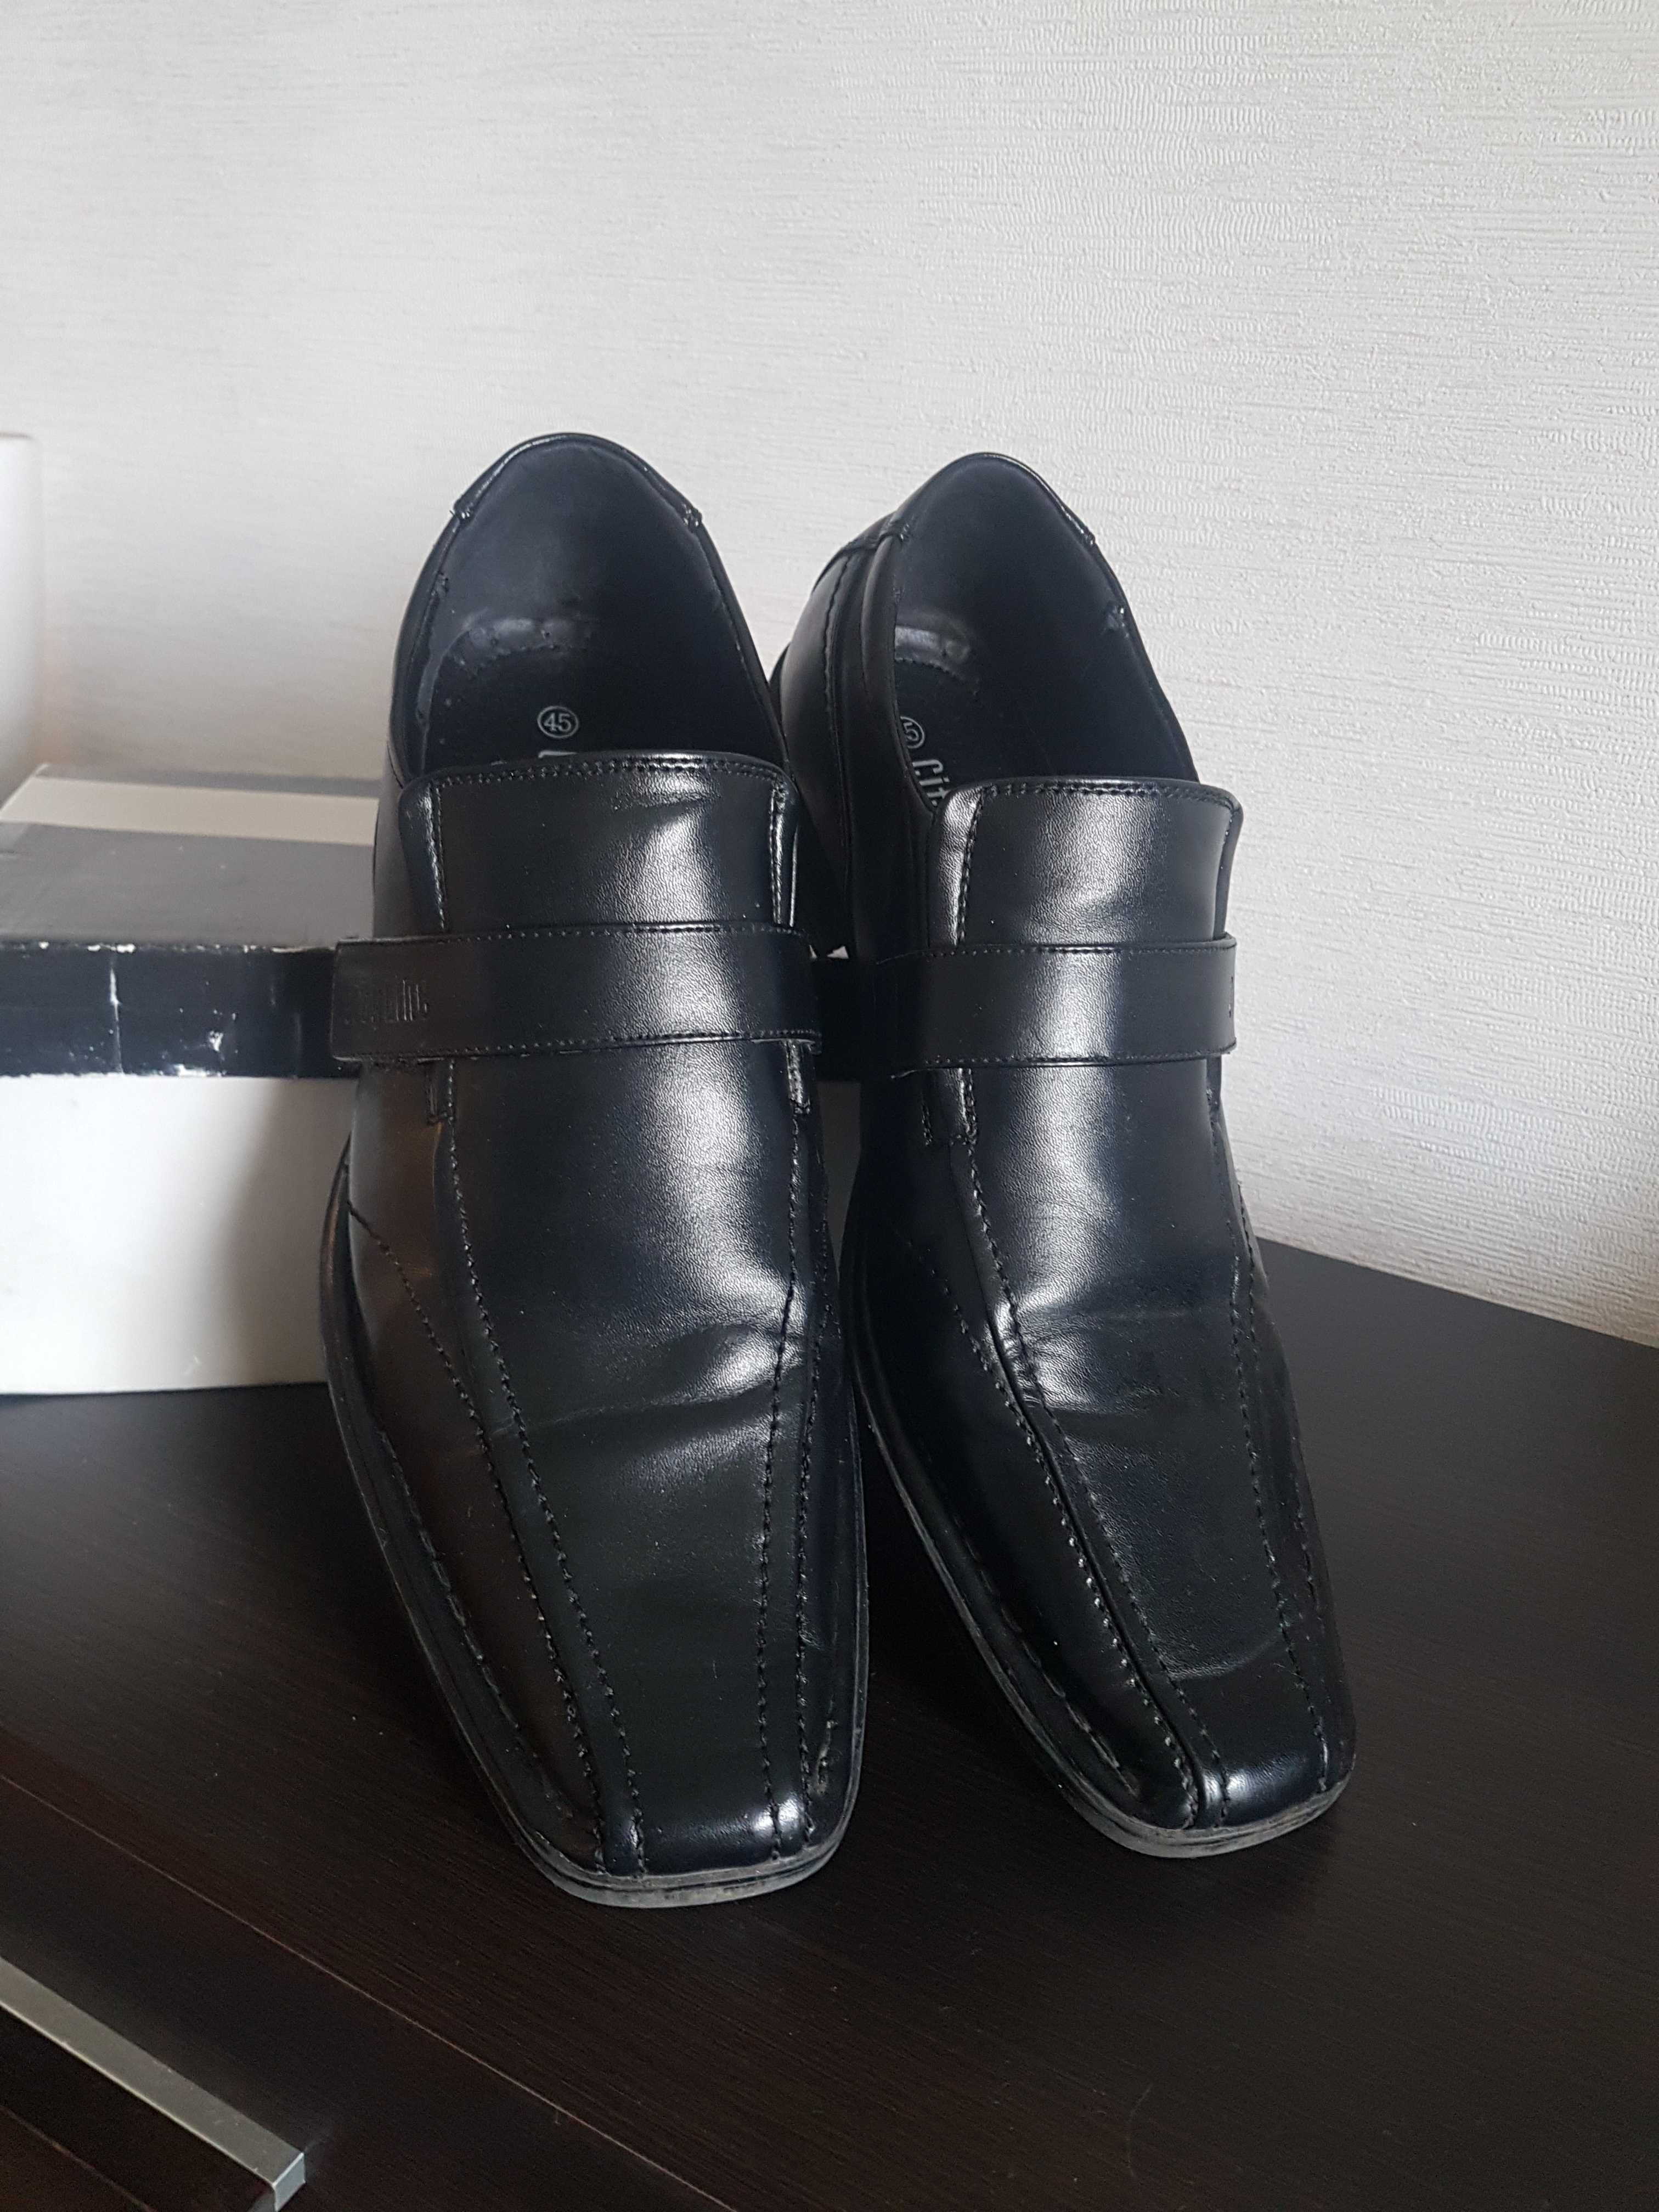 Buty męskie czarne  roz 45 regulowane na rzepy.